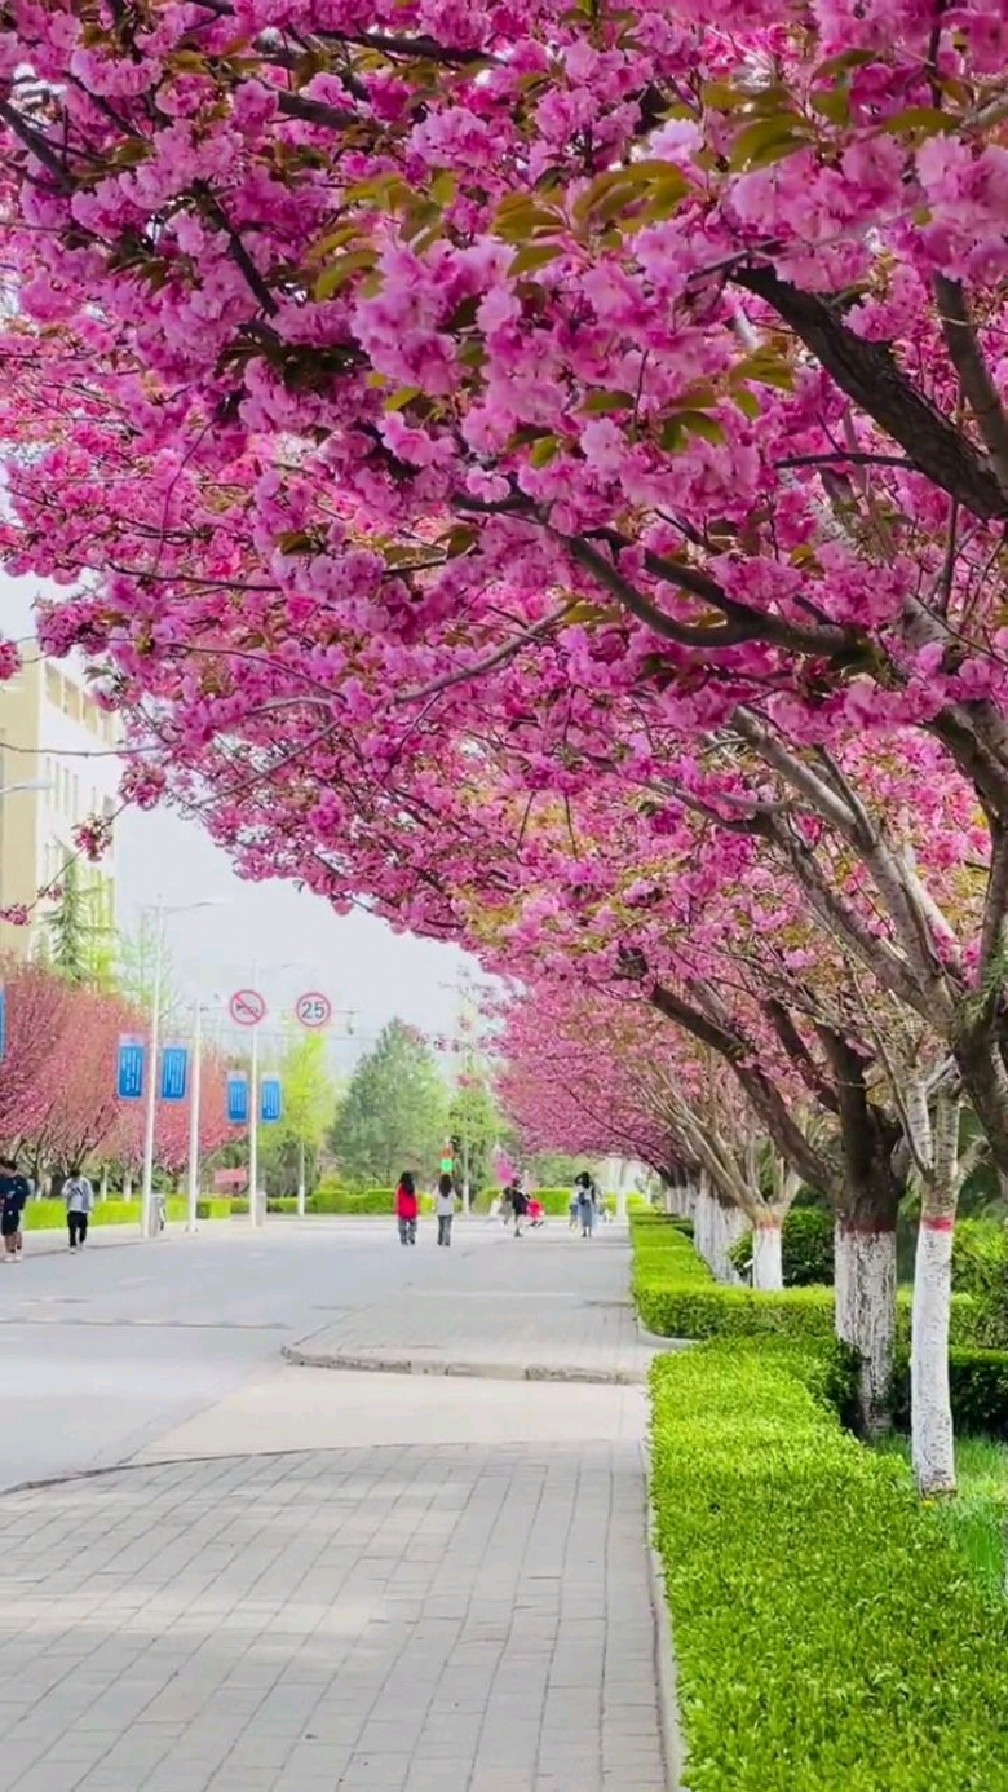 甘肃第二大城市庆阳最高学府陇东学院,校园樱花盛开,风景太美了